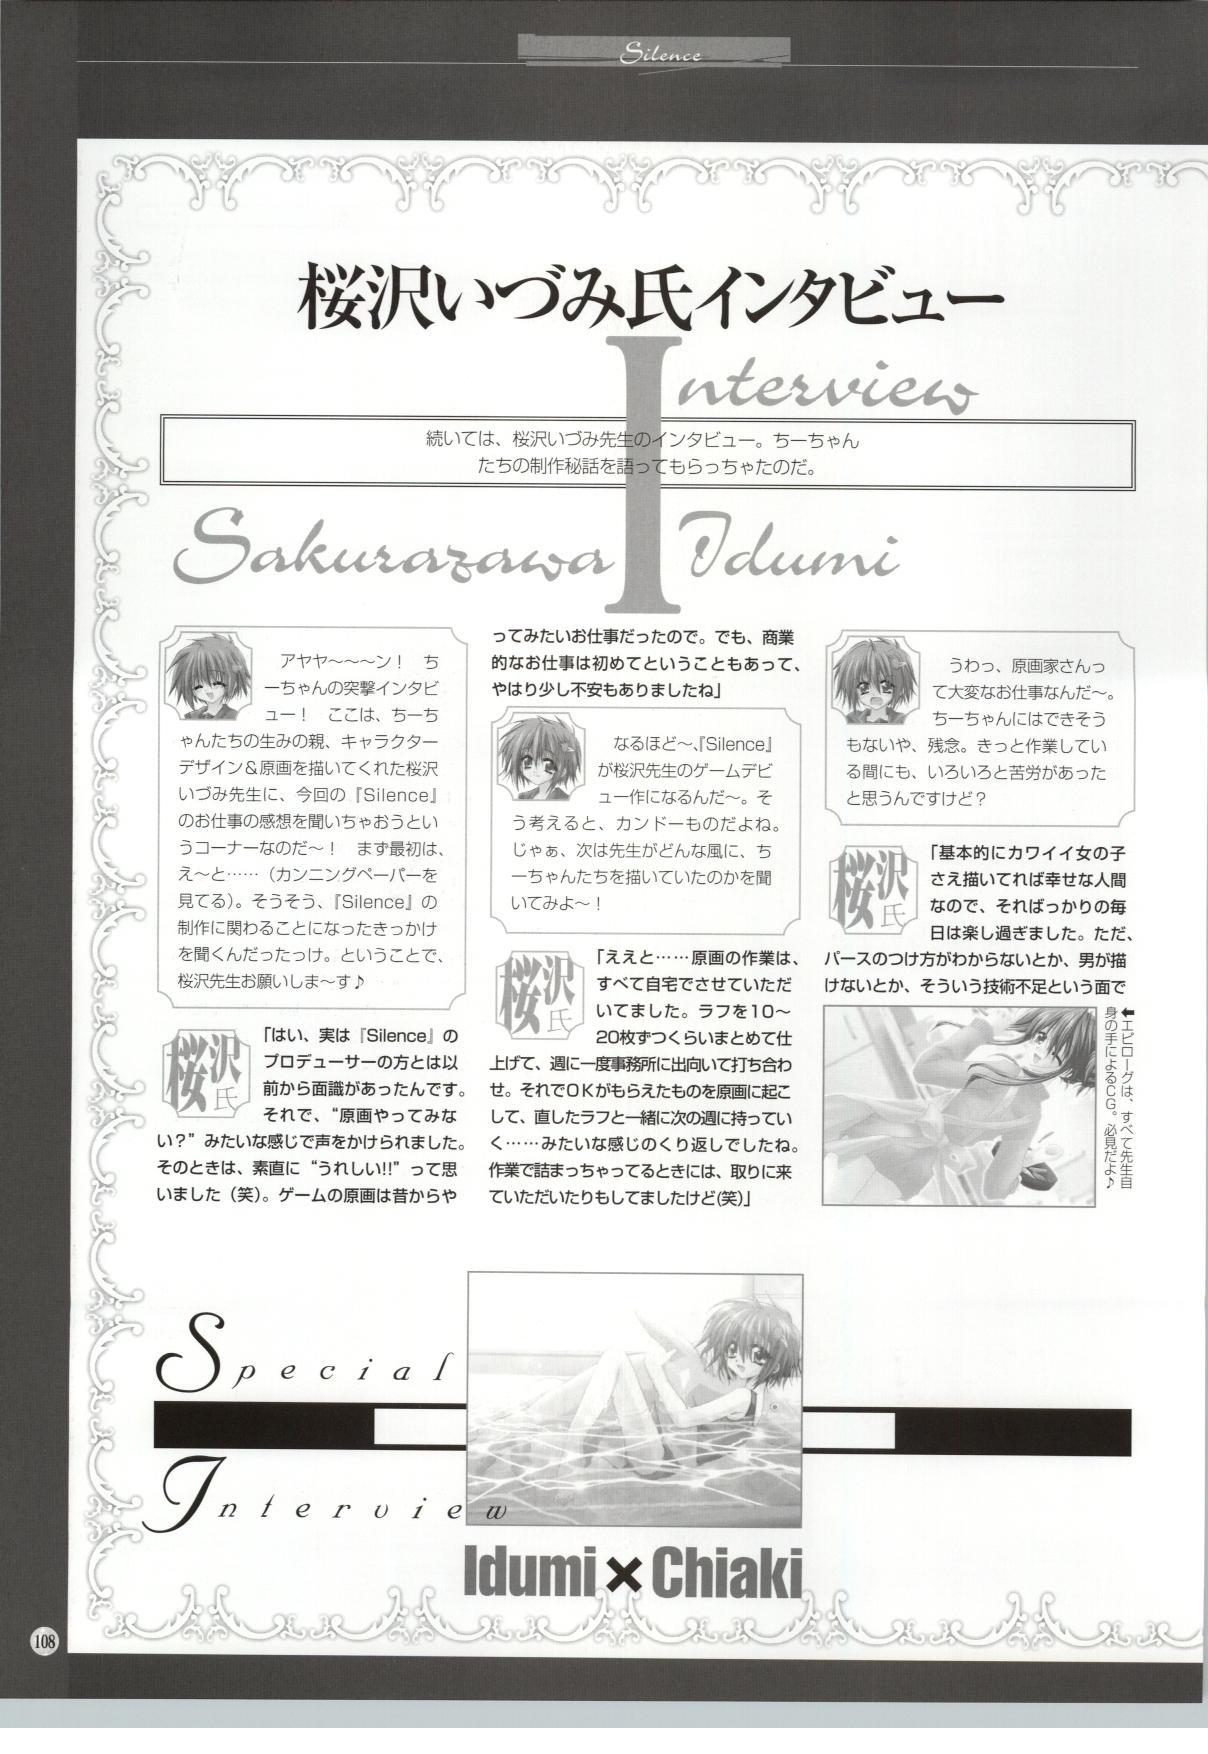 [Sakurazawa Izumi] Silence - Seinaru Yoru no Kane no Naka de... Tenshi no Album - Sakurazawa Izumi Artworks 102